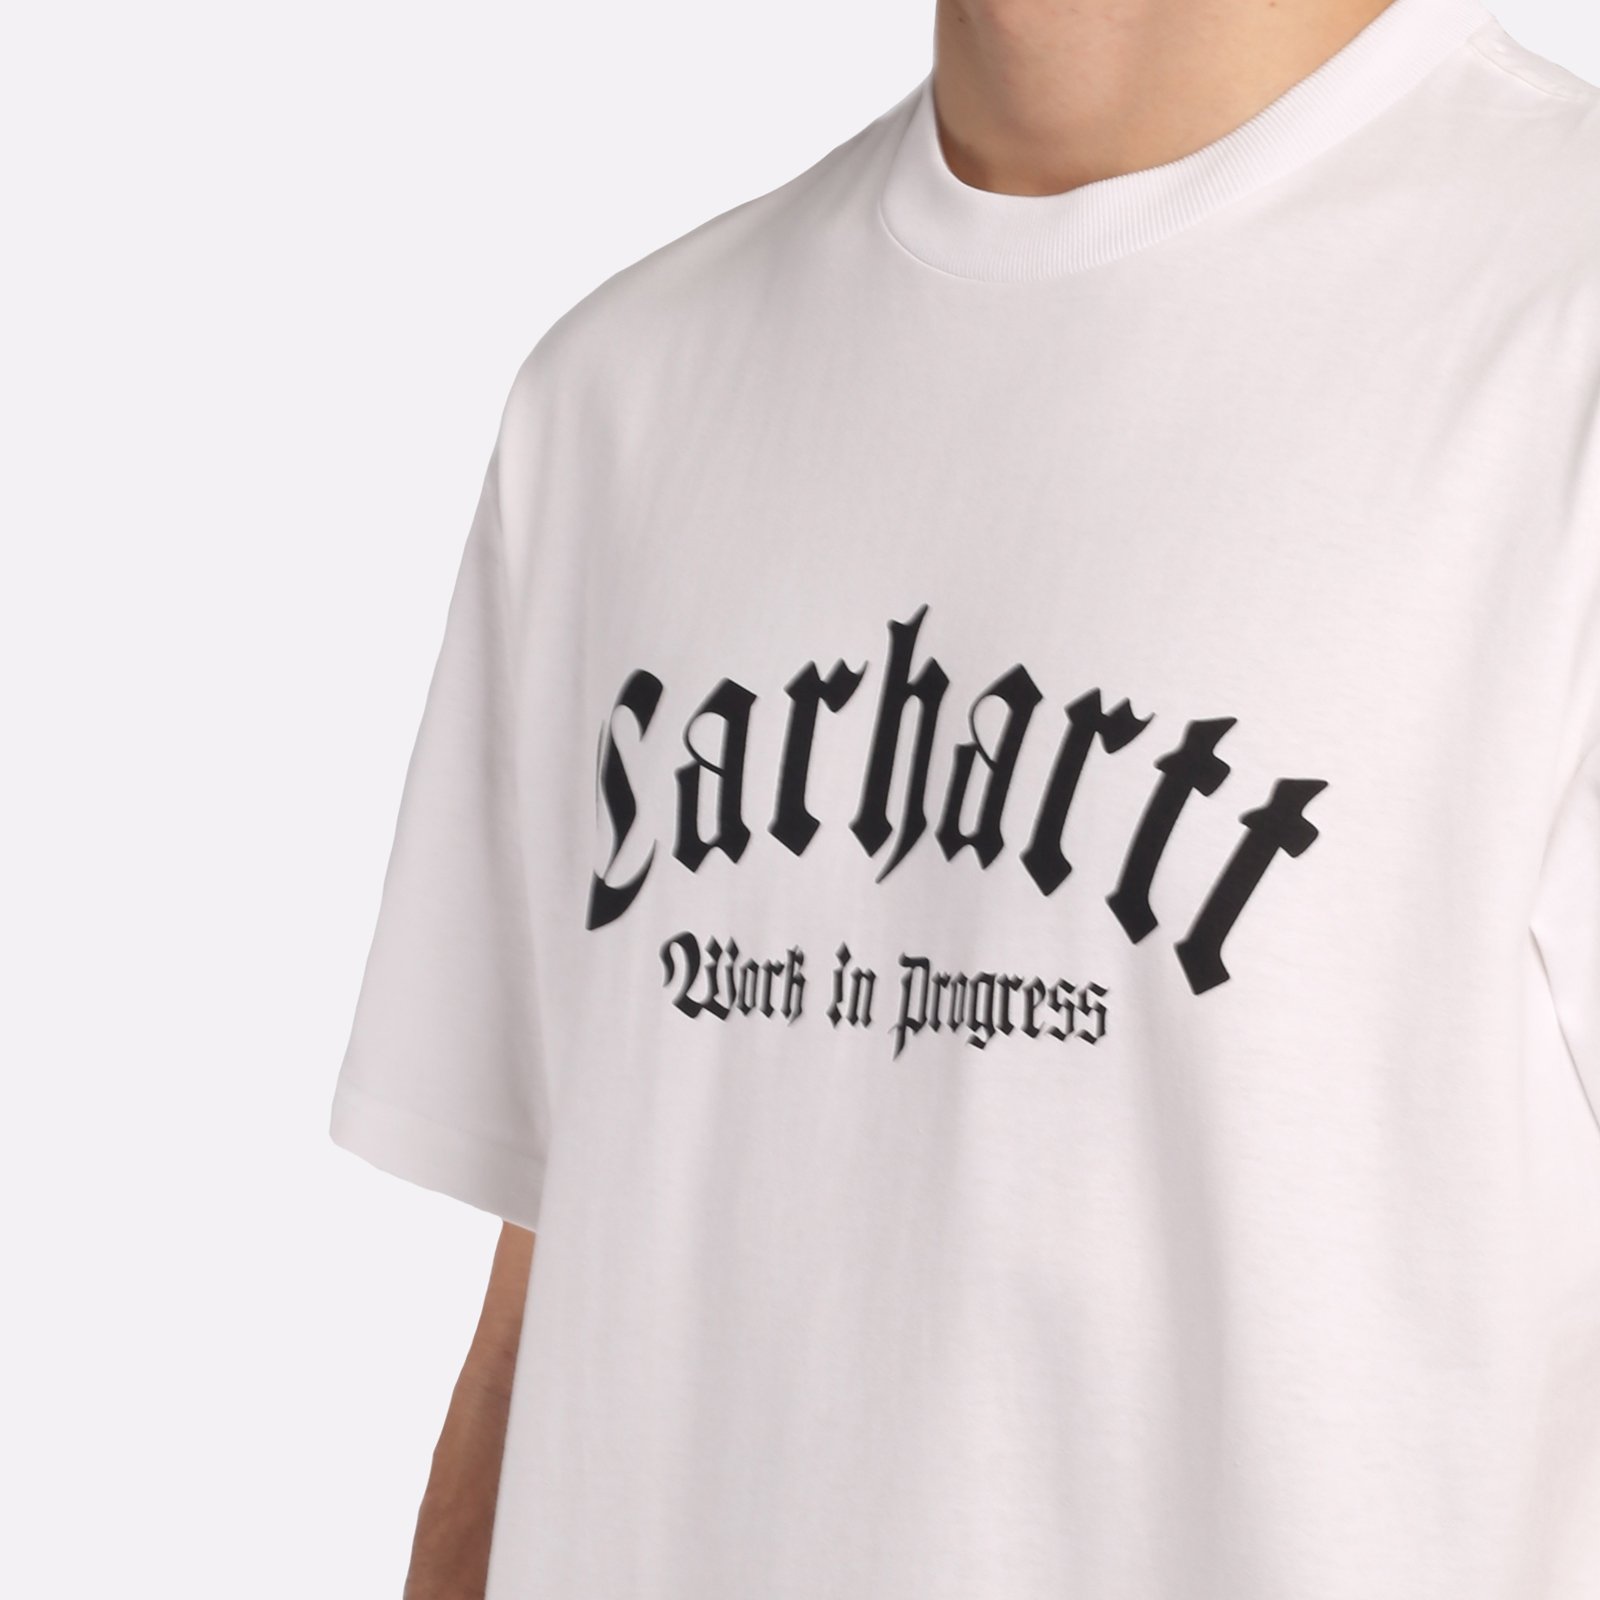 мужская футболка Carhartt WIP S/S Onyx T-Shirt  (I032875-white/black)  - цена, описание, фото 4